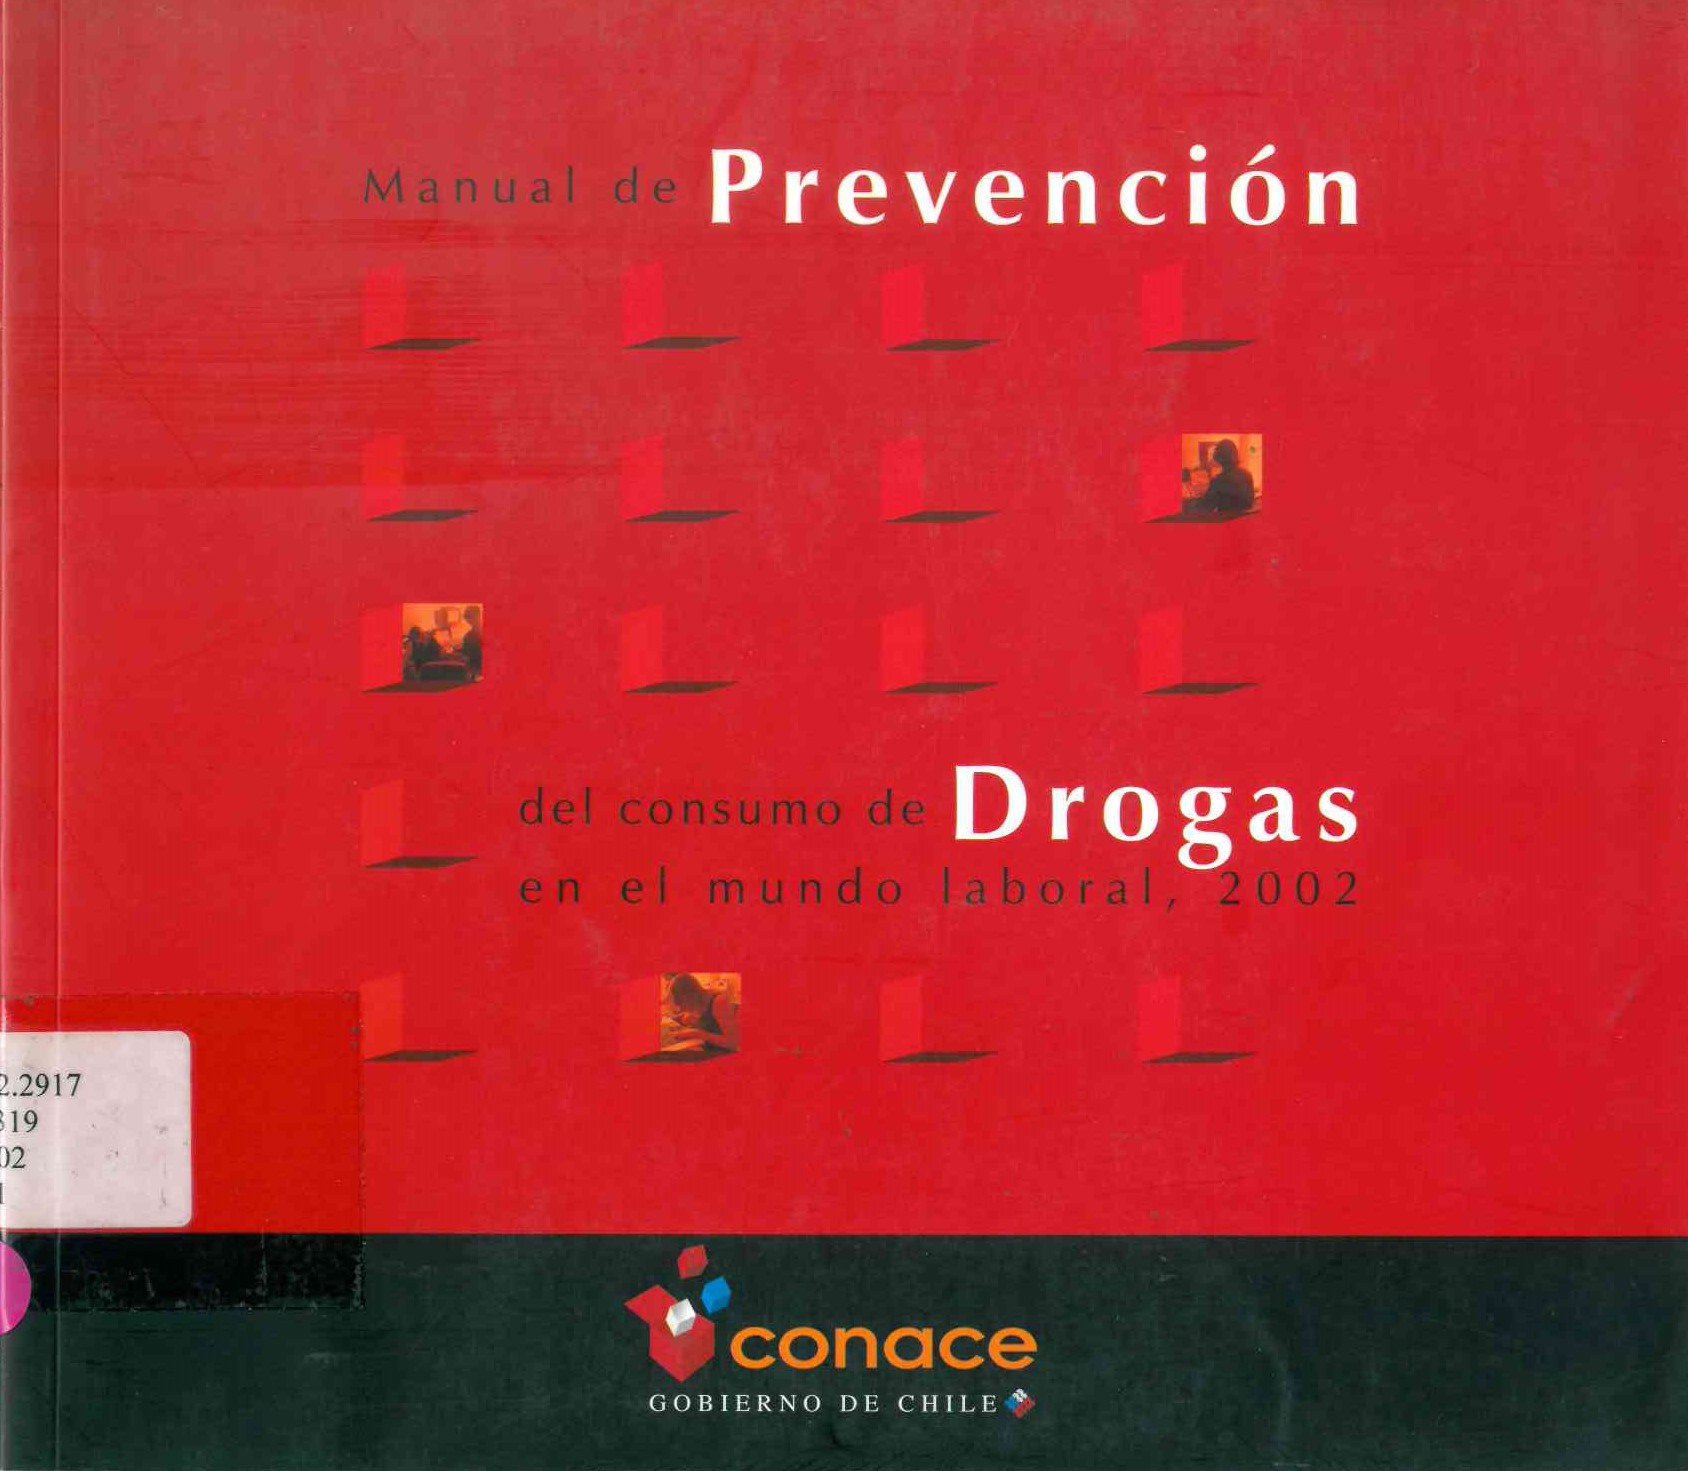 Manual de prevención del consumo de drogas en el mundo laboral, 2002